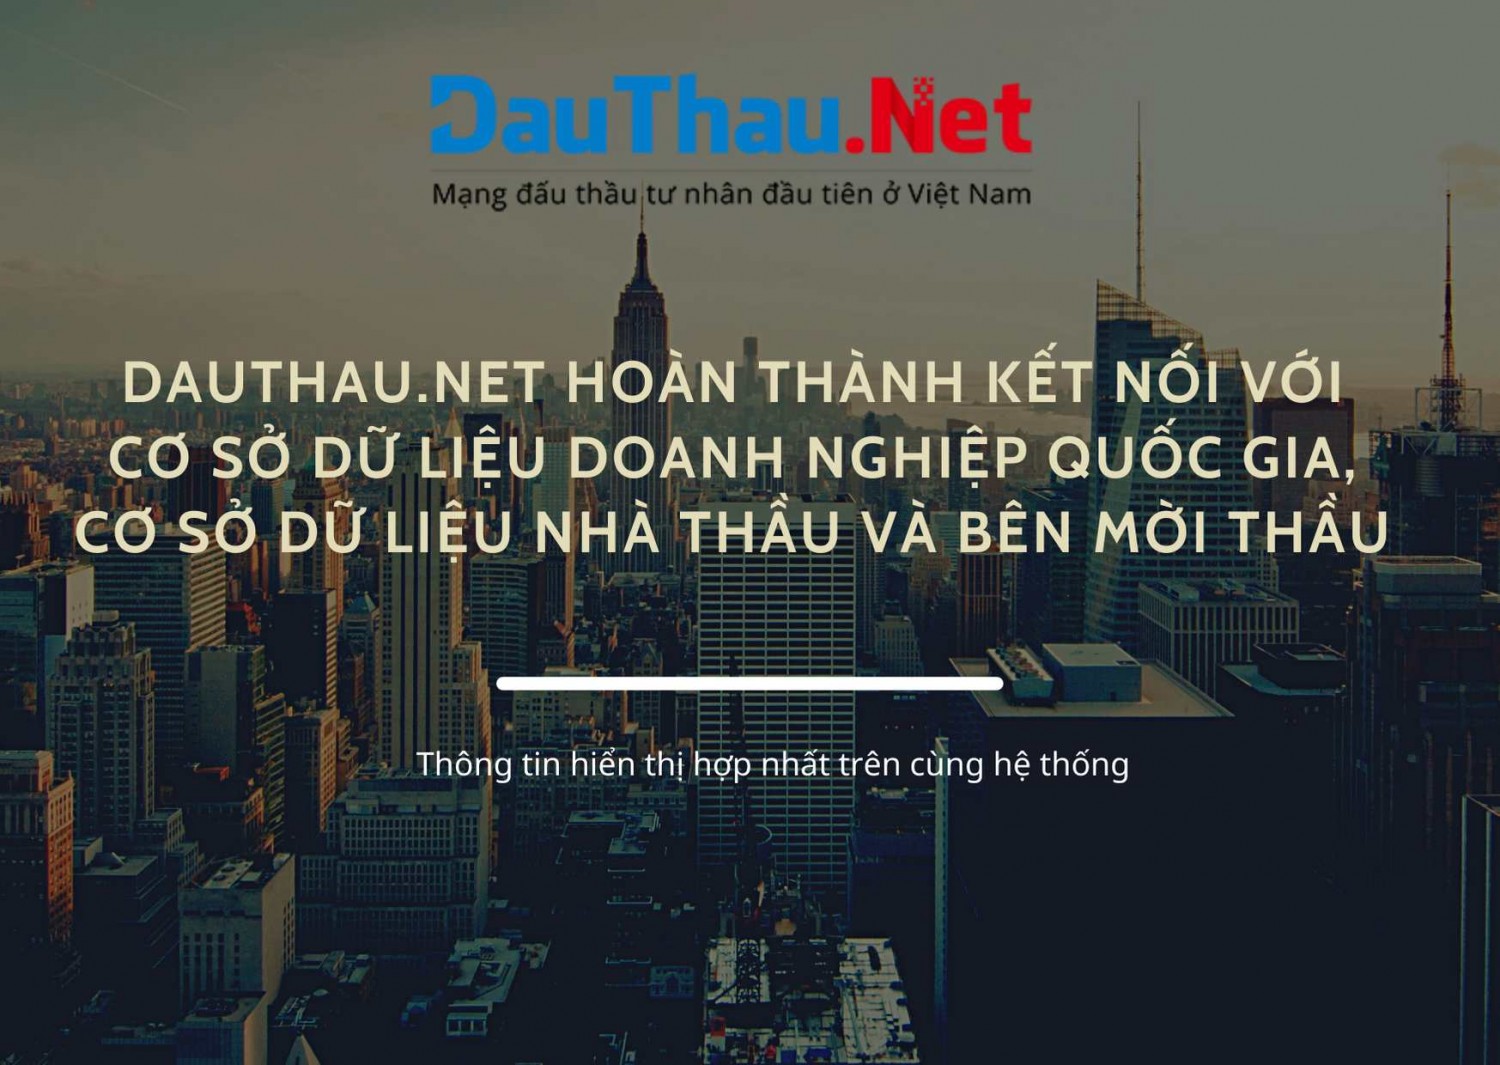 DauThau.Net hoàn thành kết nối với cơ sở dữ liệu doanh nghiệp quốc gia, cơ sở dữ liệu nhà thầu và bên mời thầu - thông tin hiển thị hợp nhất trên cùng hệ thống